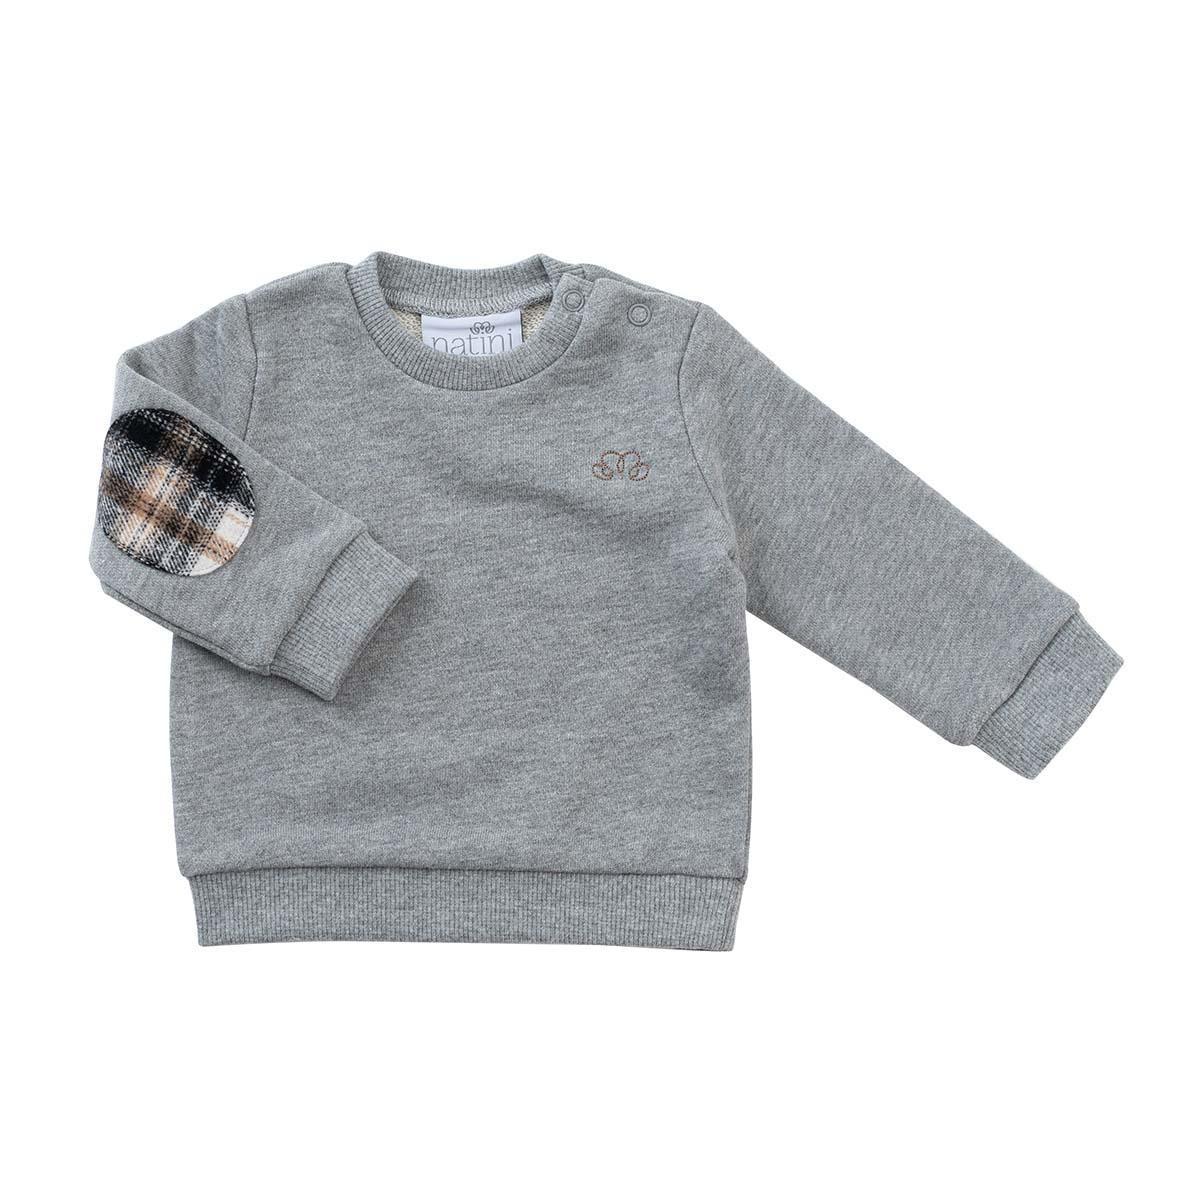 Natini - Sweater frankie grey